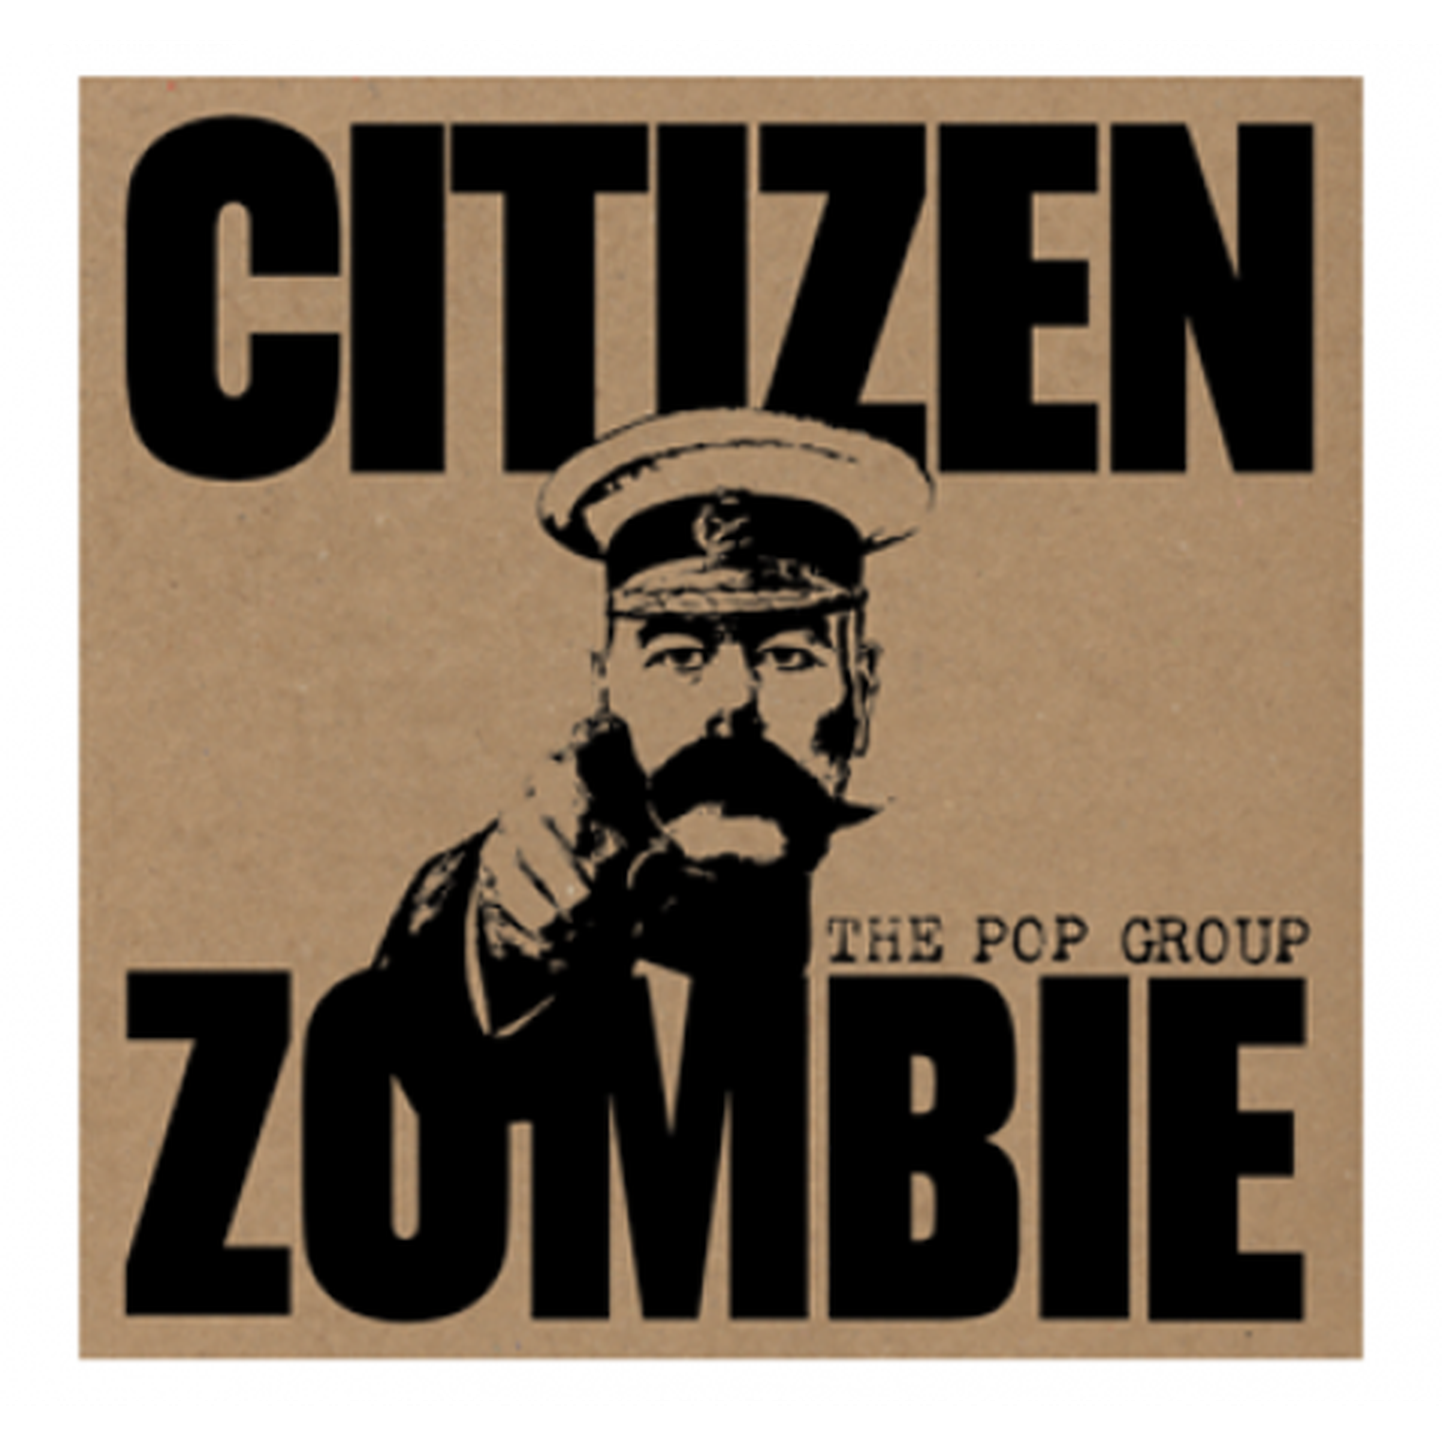 The Pop Group- Citizen Zombie